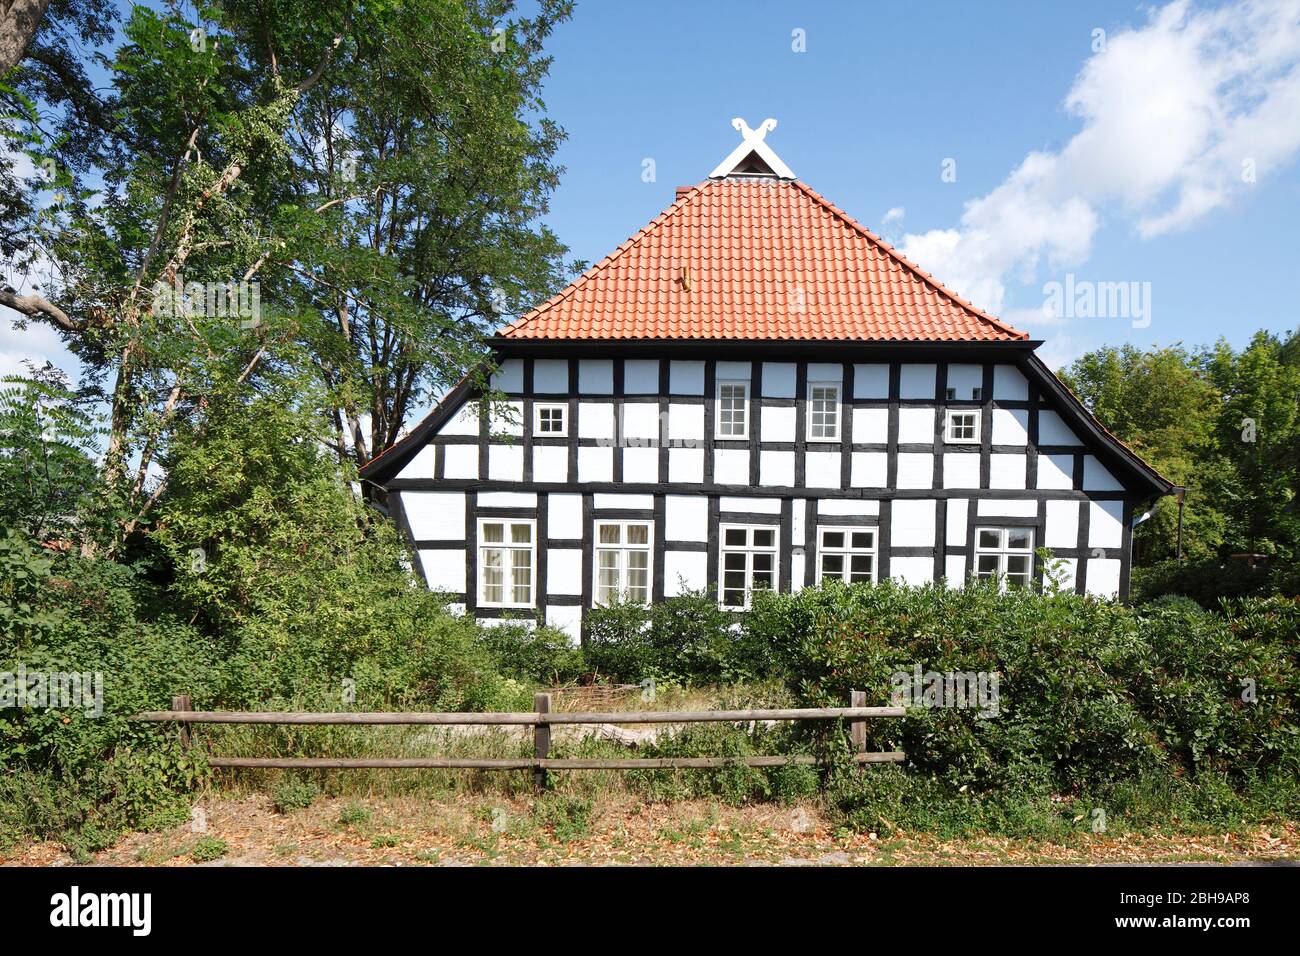 Achim, maison à colombages, ancienne ferme de Basse-Saxe Banque D'Images